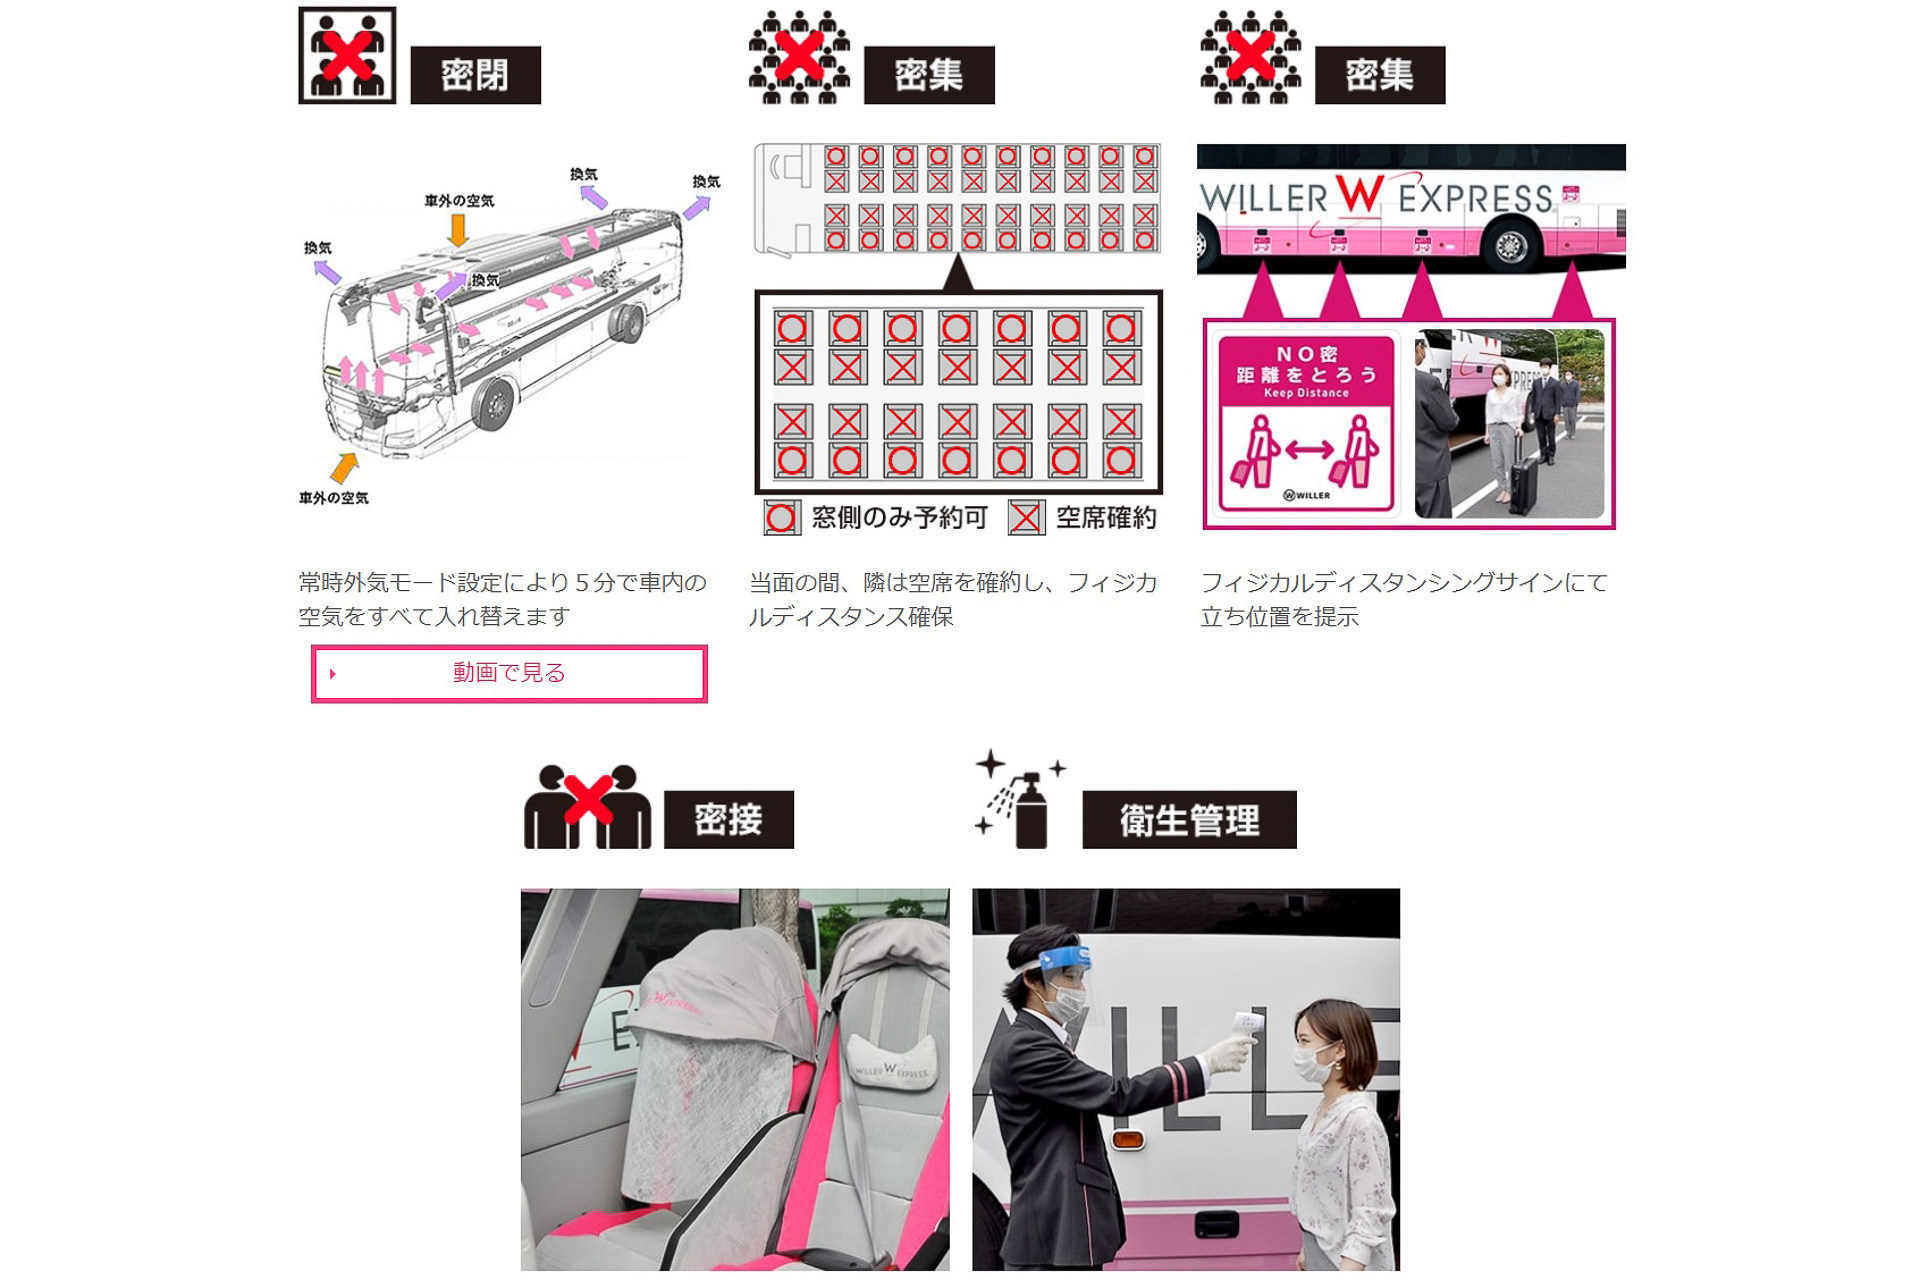 Willer コロナ対策実施で高速バスの運行再開 東京 仙台 名古屋 大阪など7路線を6月1日から トラベル Watch